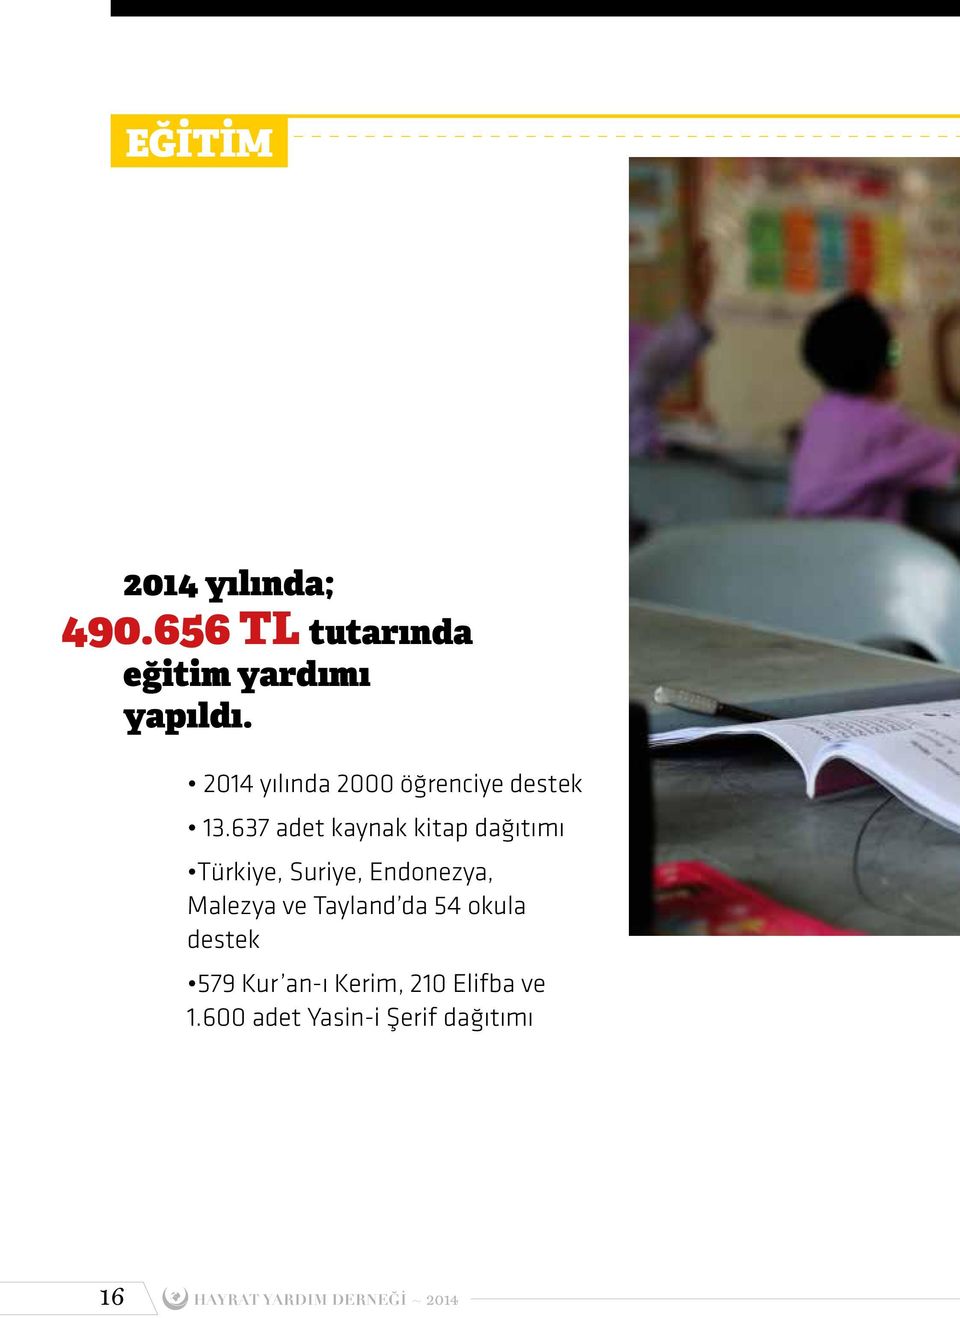 637 adet kaynak kitap dağıtımı Türkiye, Suriye, Endonezya, Malezya ve